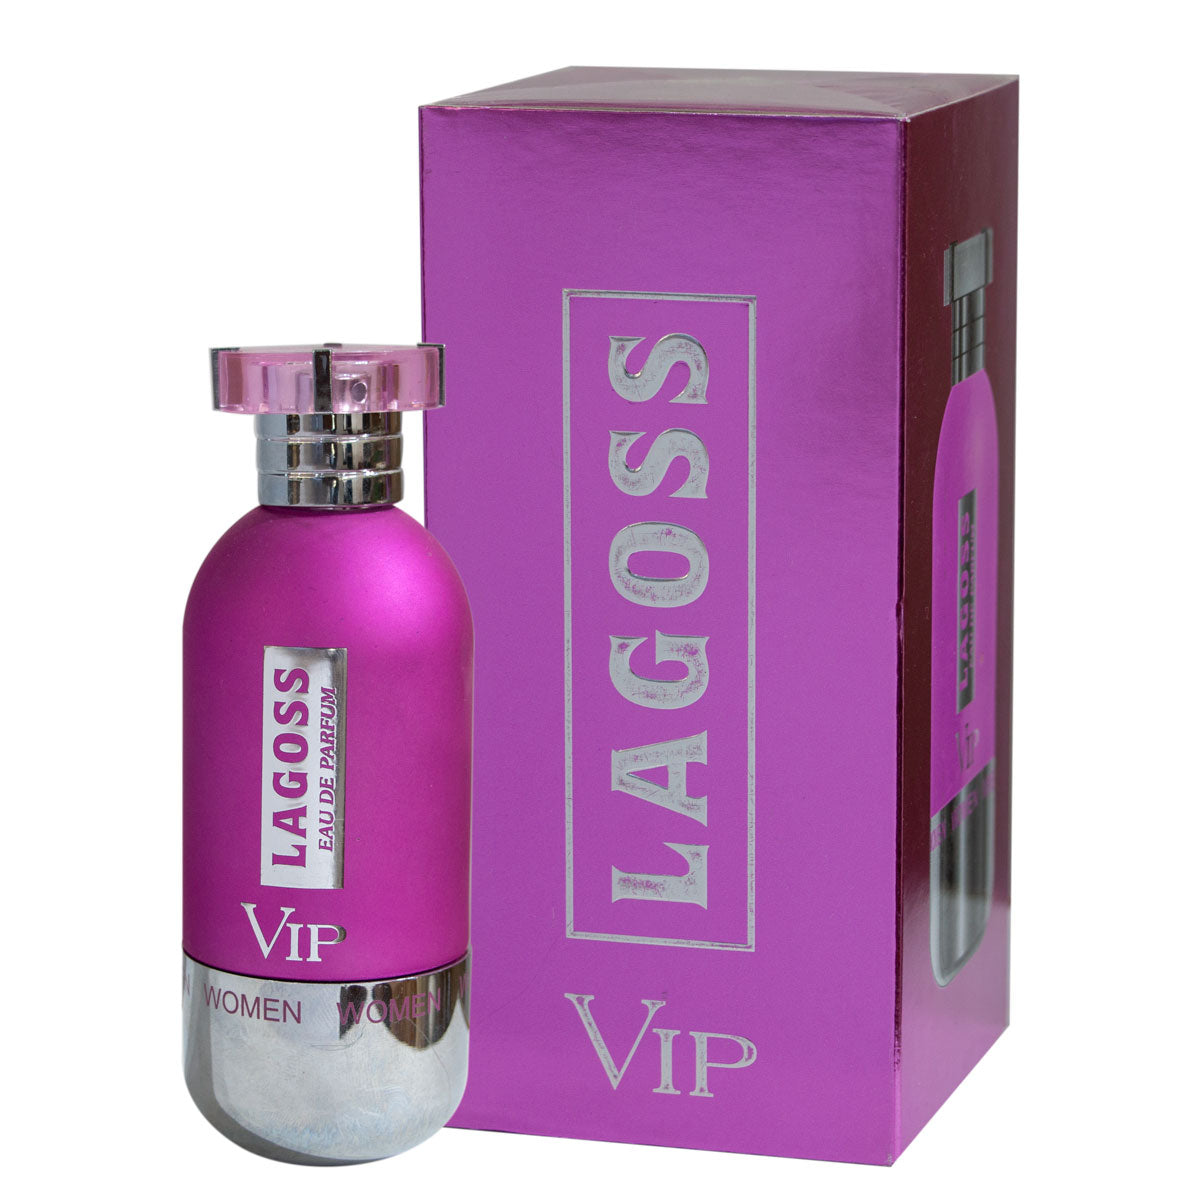 VIP Lagoss for Women EDT 100ml - samawa perfumes 